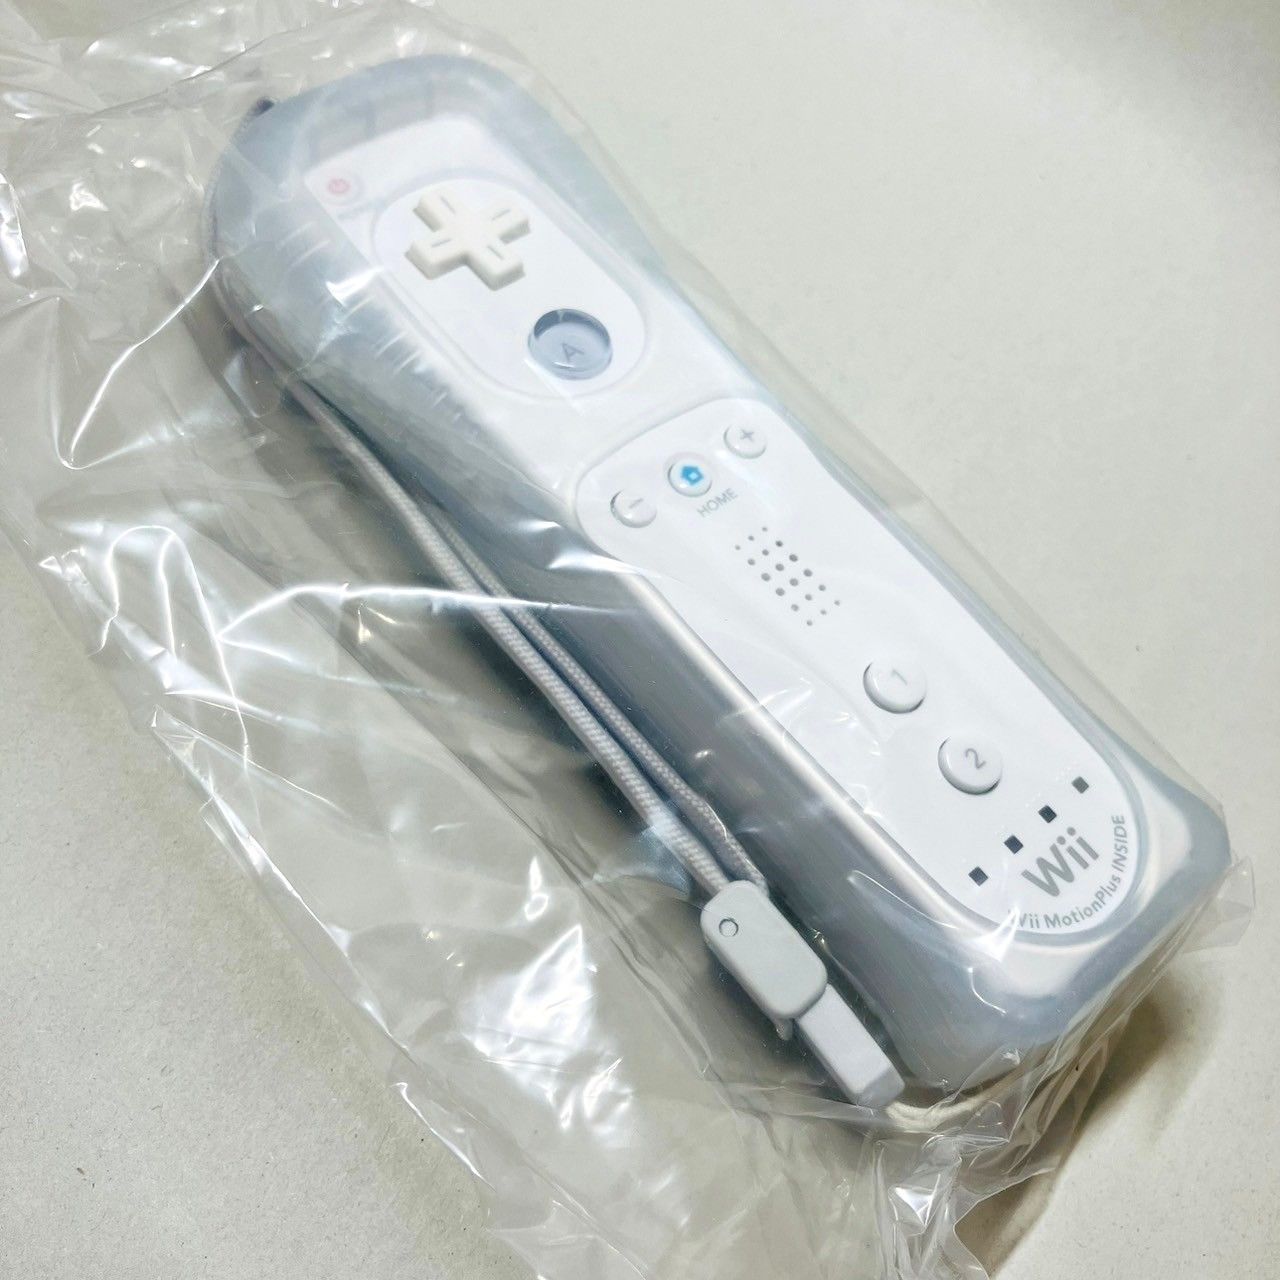 ◇【未使用品】 Nintendo Wii リモコンプラス shiro シロ 白 ホワイト 